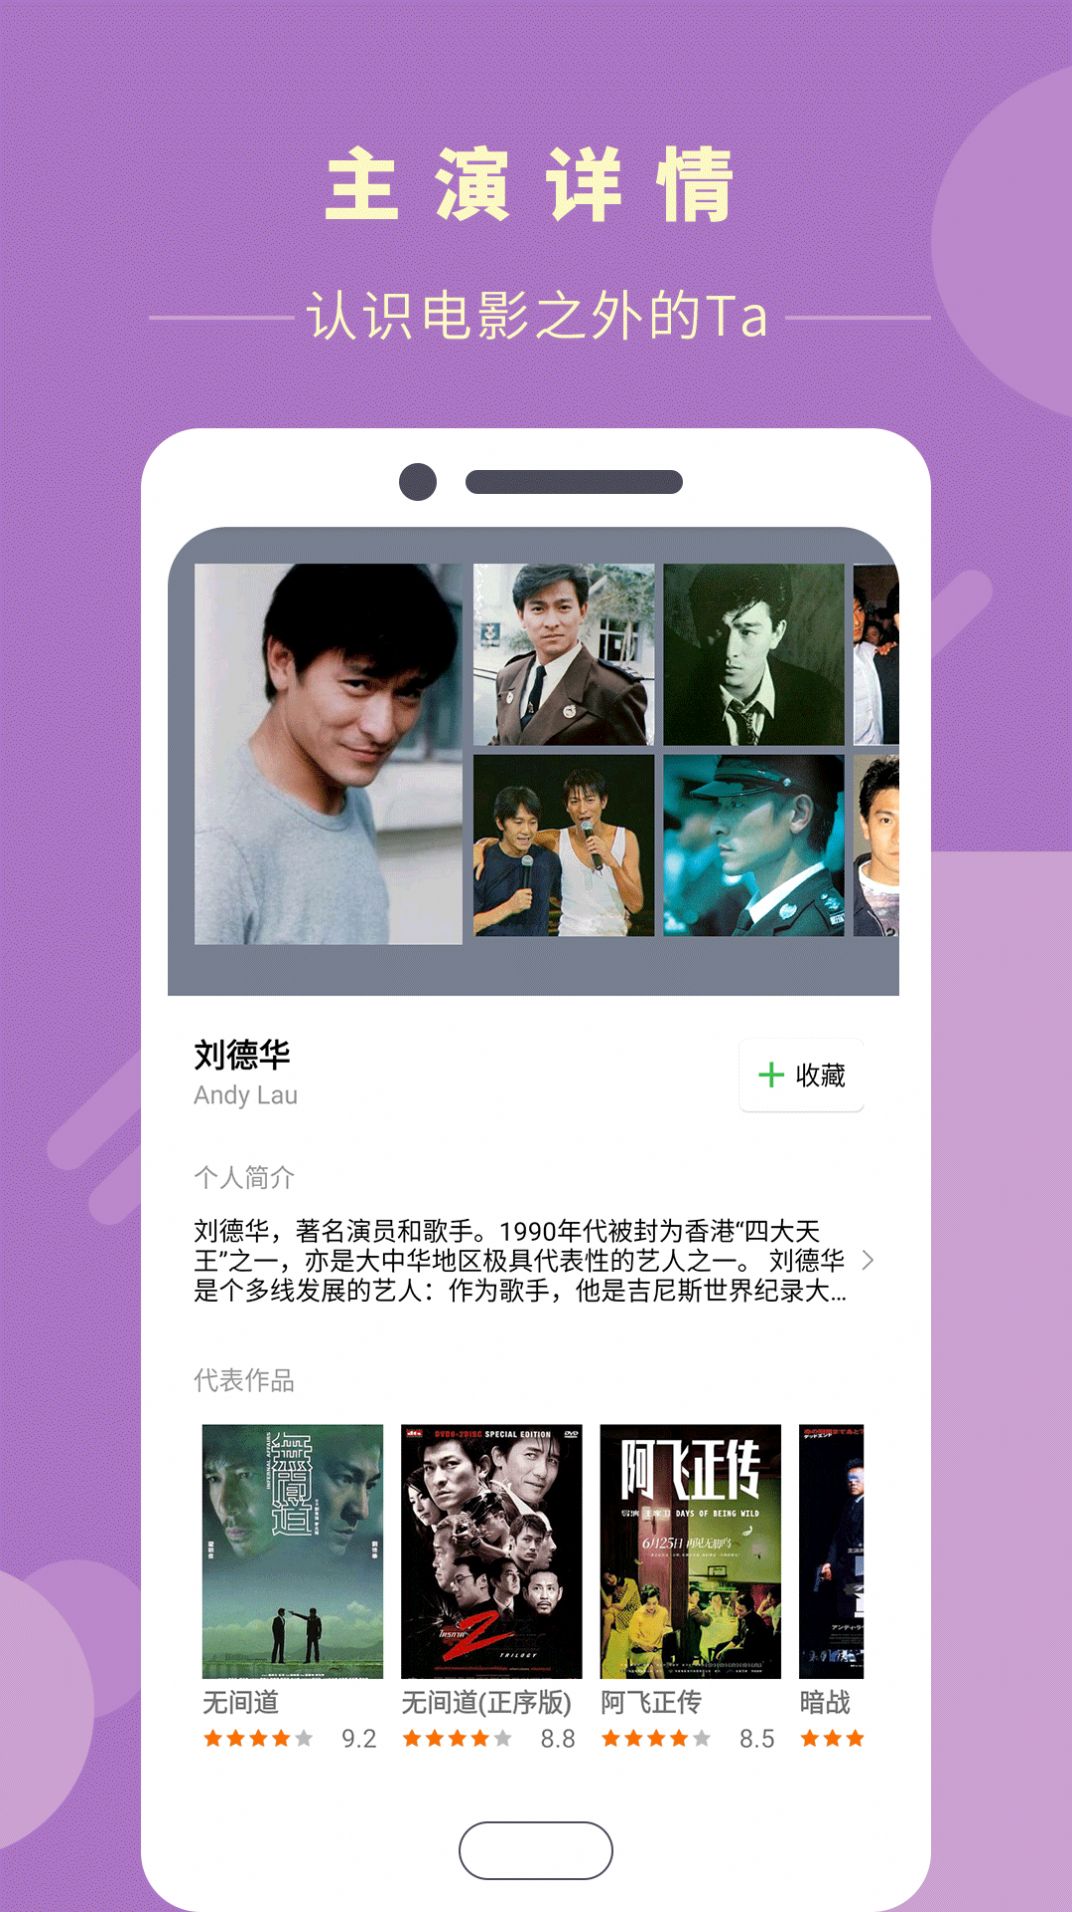 菠萝蜜blm6.xyz最新版手机软件app截图